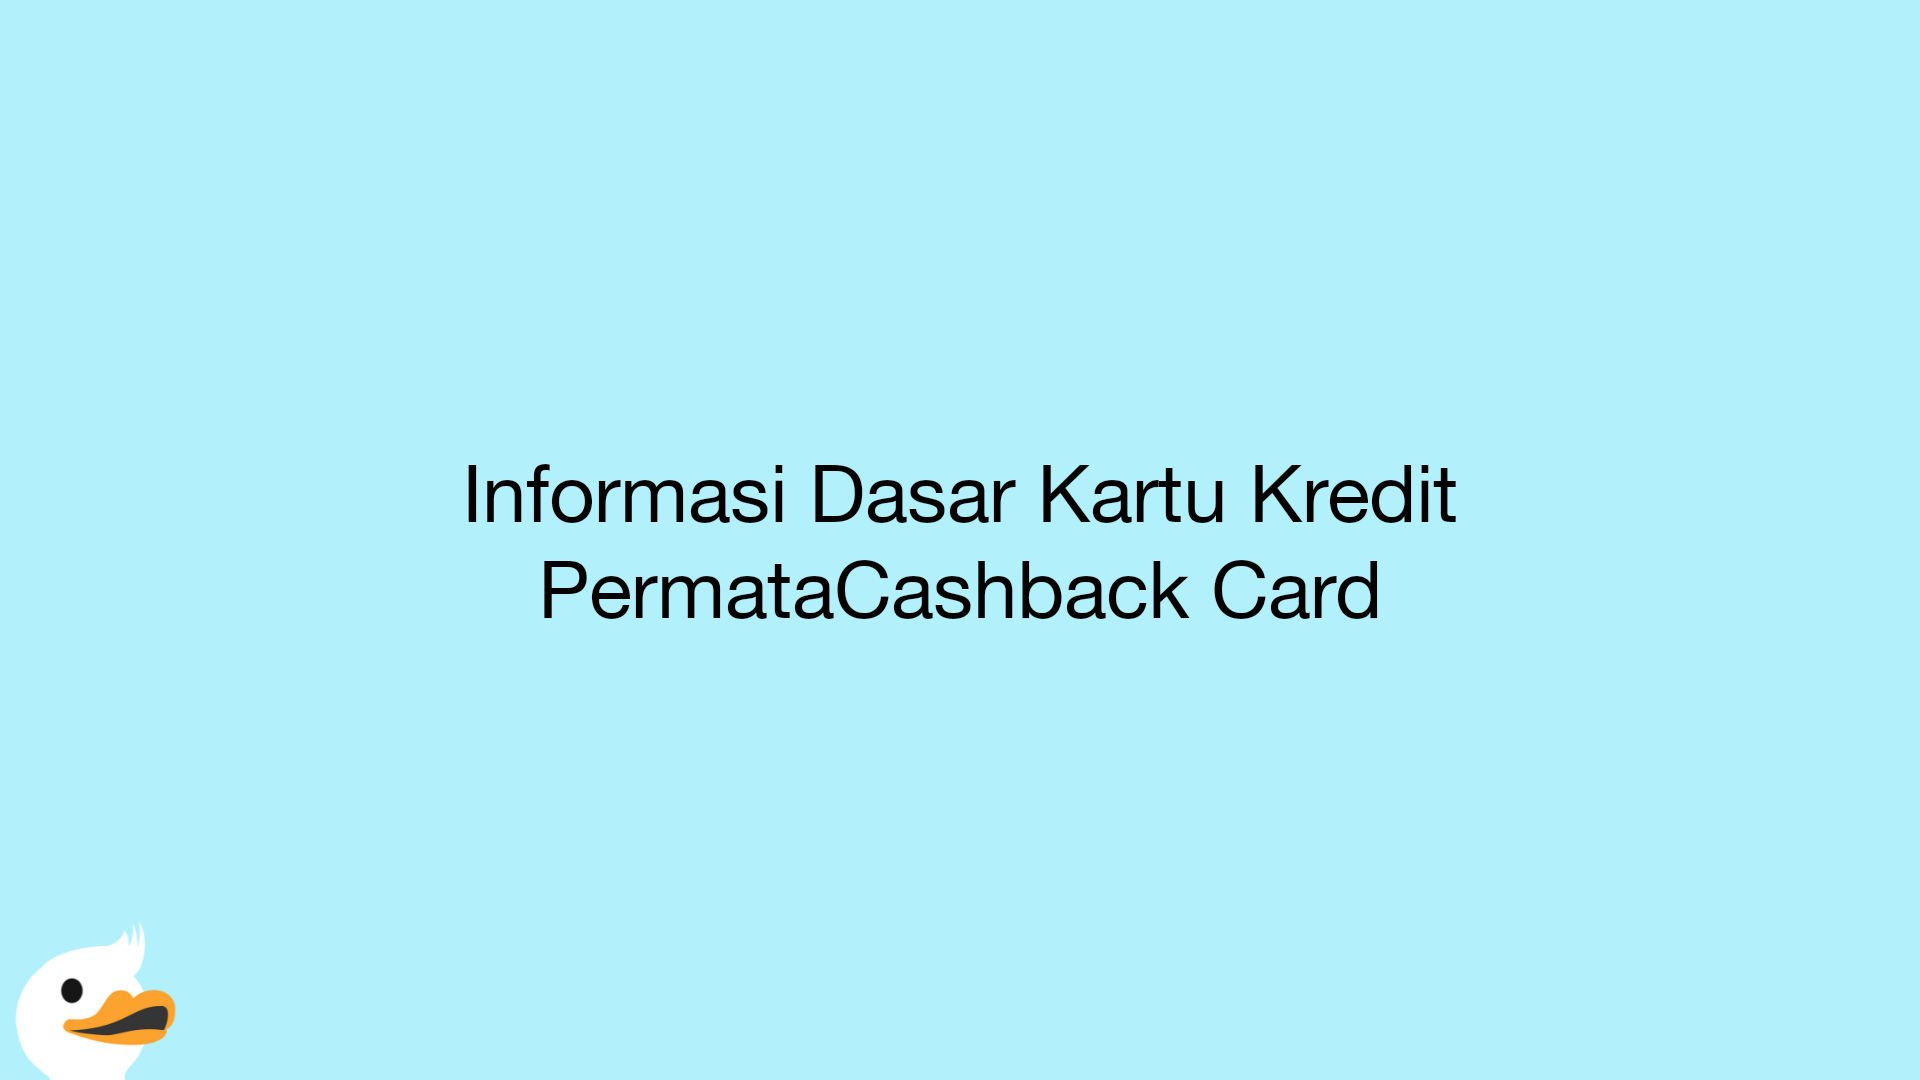 Informasi Dasar Kartu Kredit PermataCashback Card